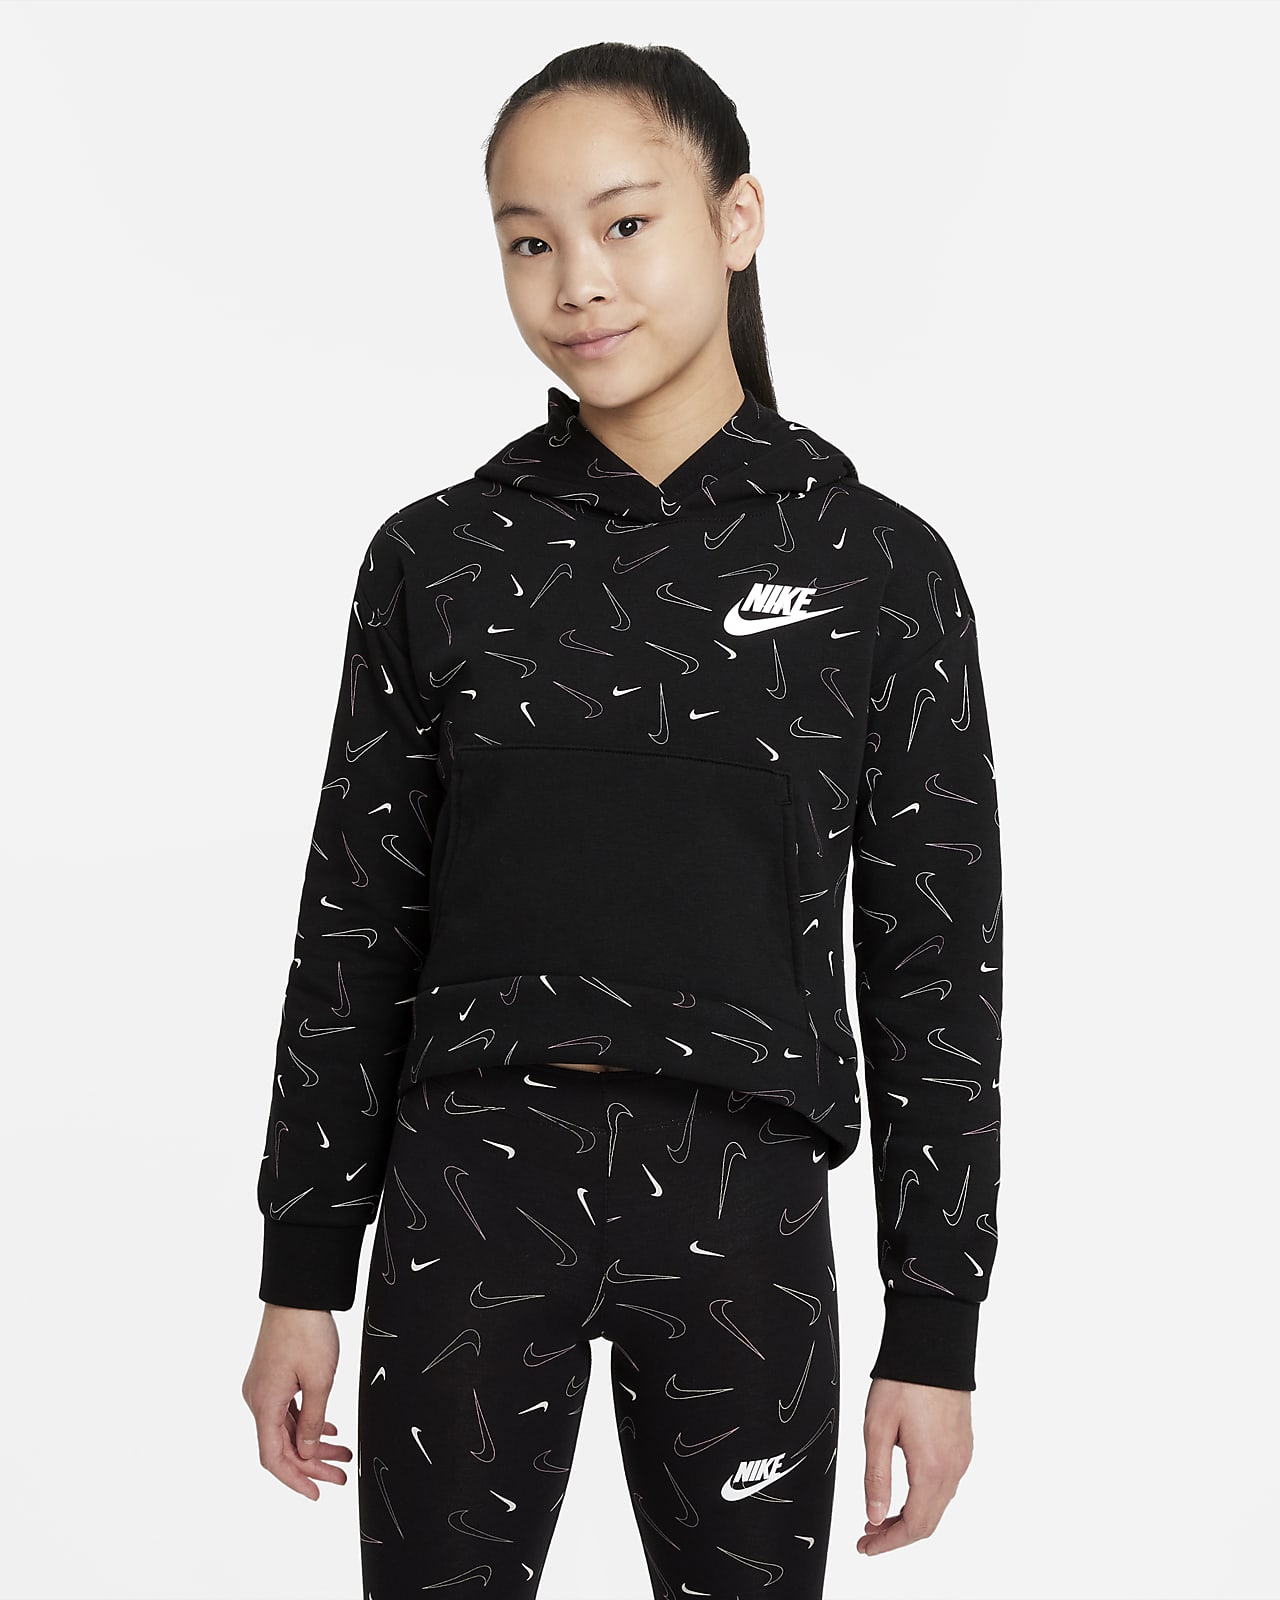 Nike Sportswear Older Kids' (Girls') Printed Fleece Hoodie